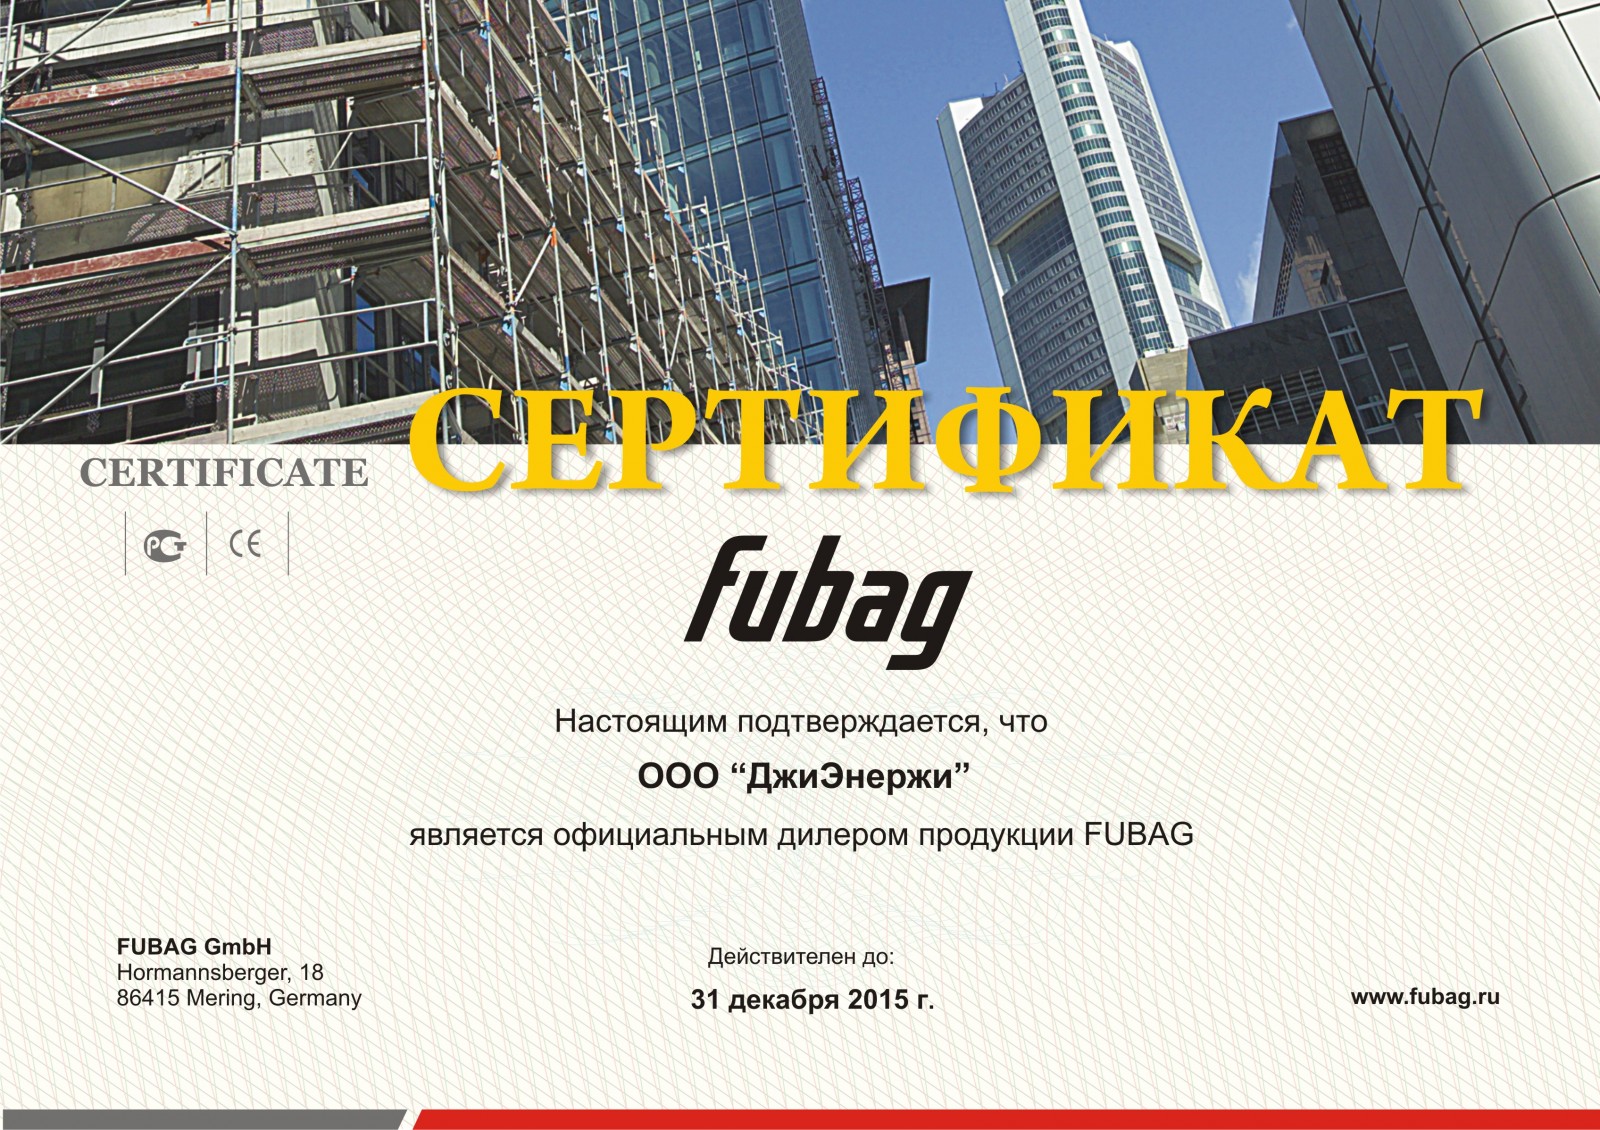 Fubag certificate